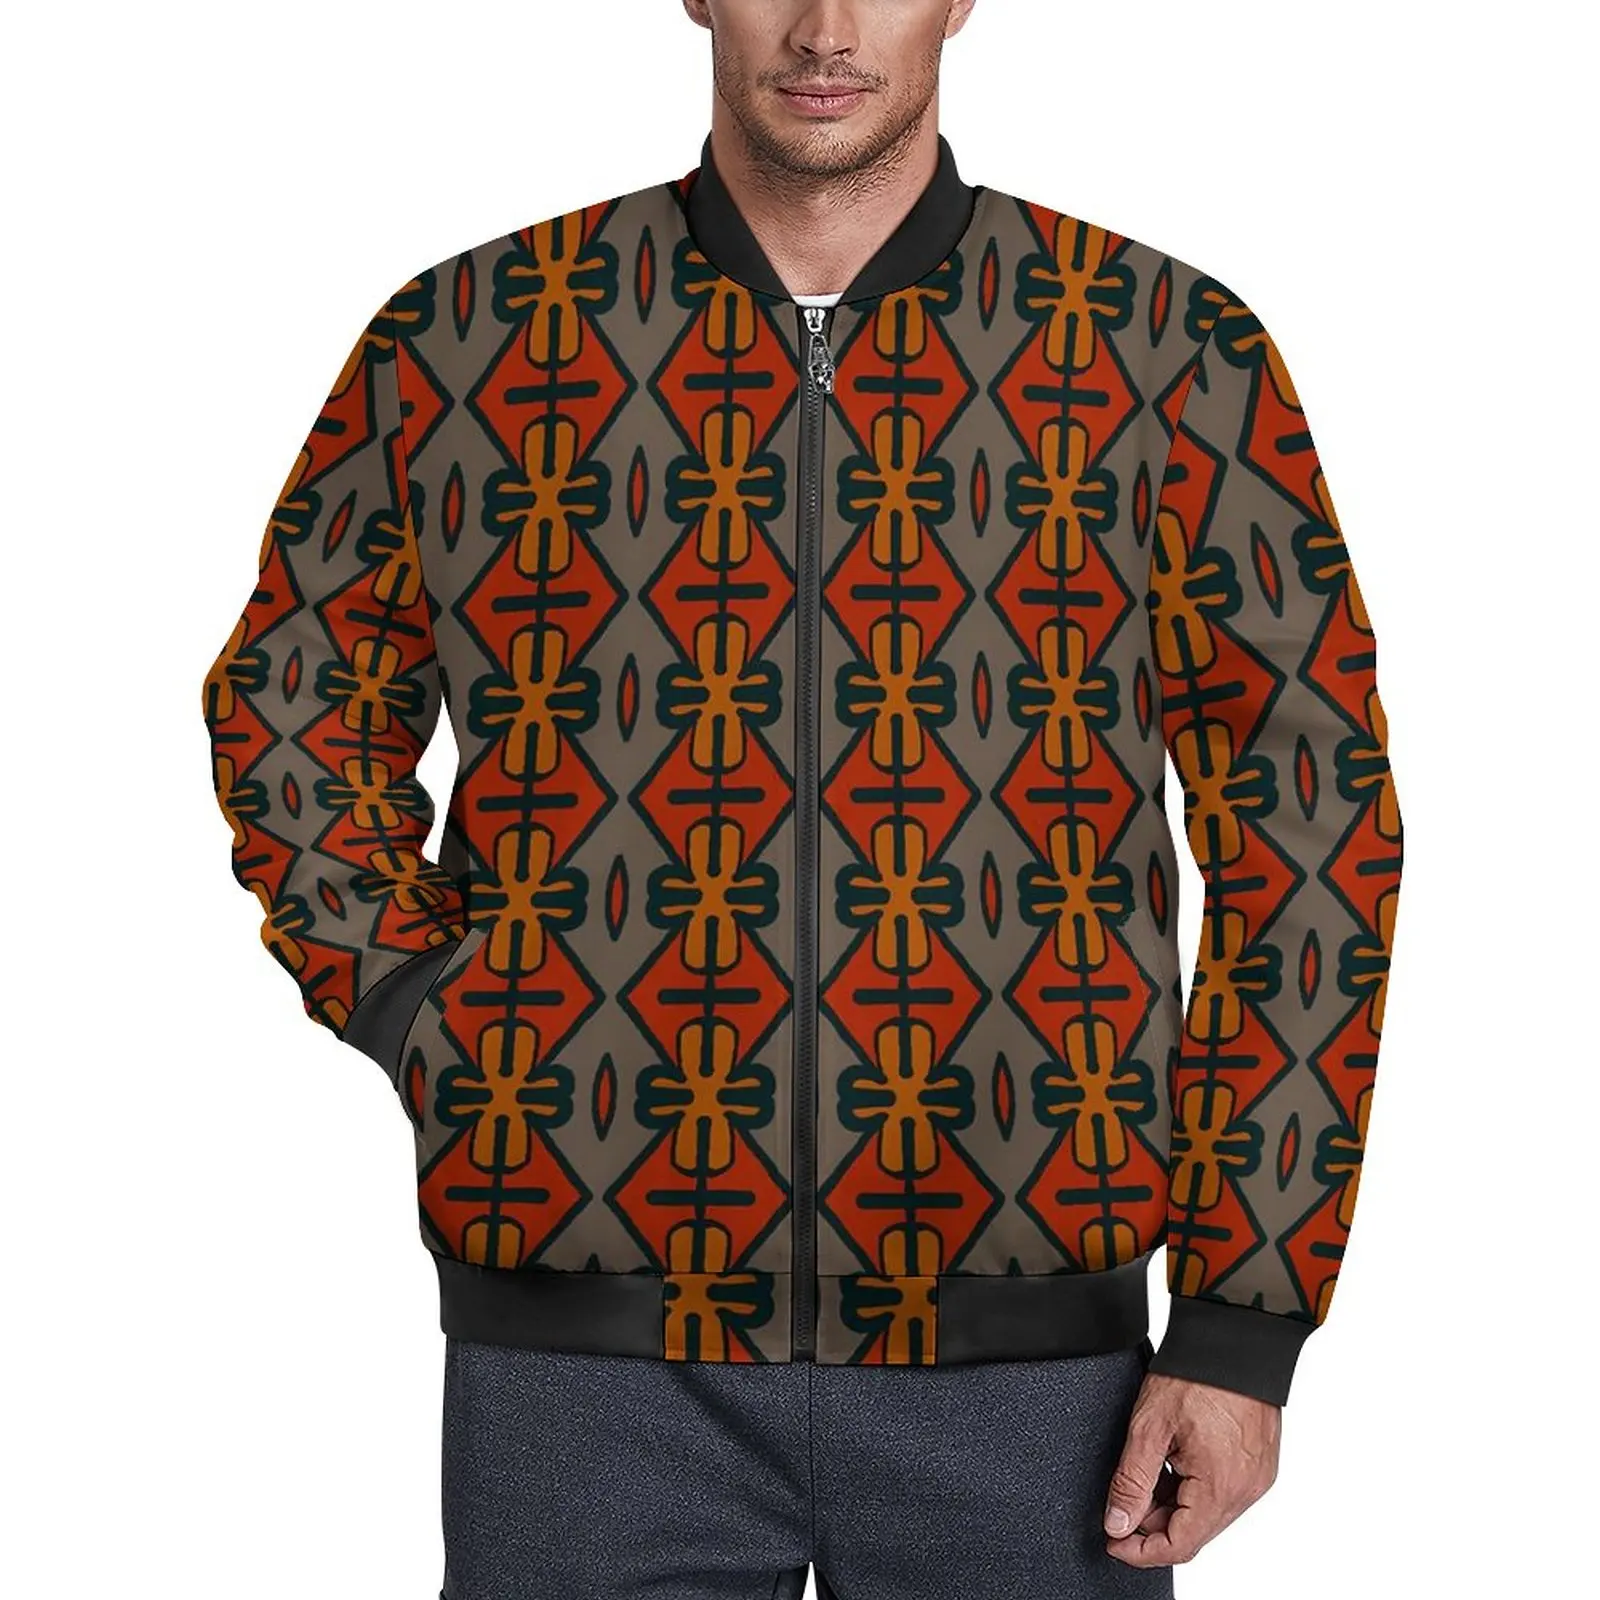 

Куртка мужская непромокаемая с этническим принтом, винтажная Повседневная ветровка оверсайз, винтажный жакет, верхняя одежда, подарок на день рождения, осень